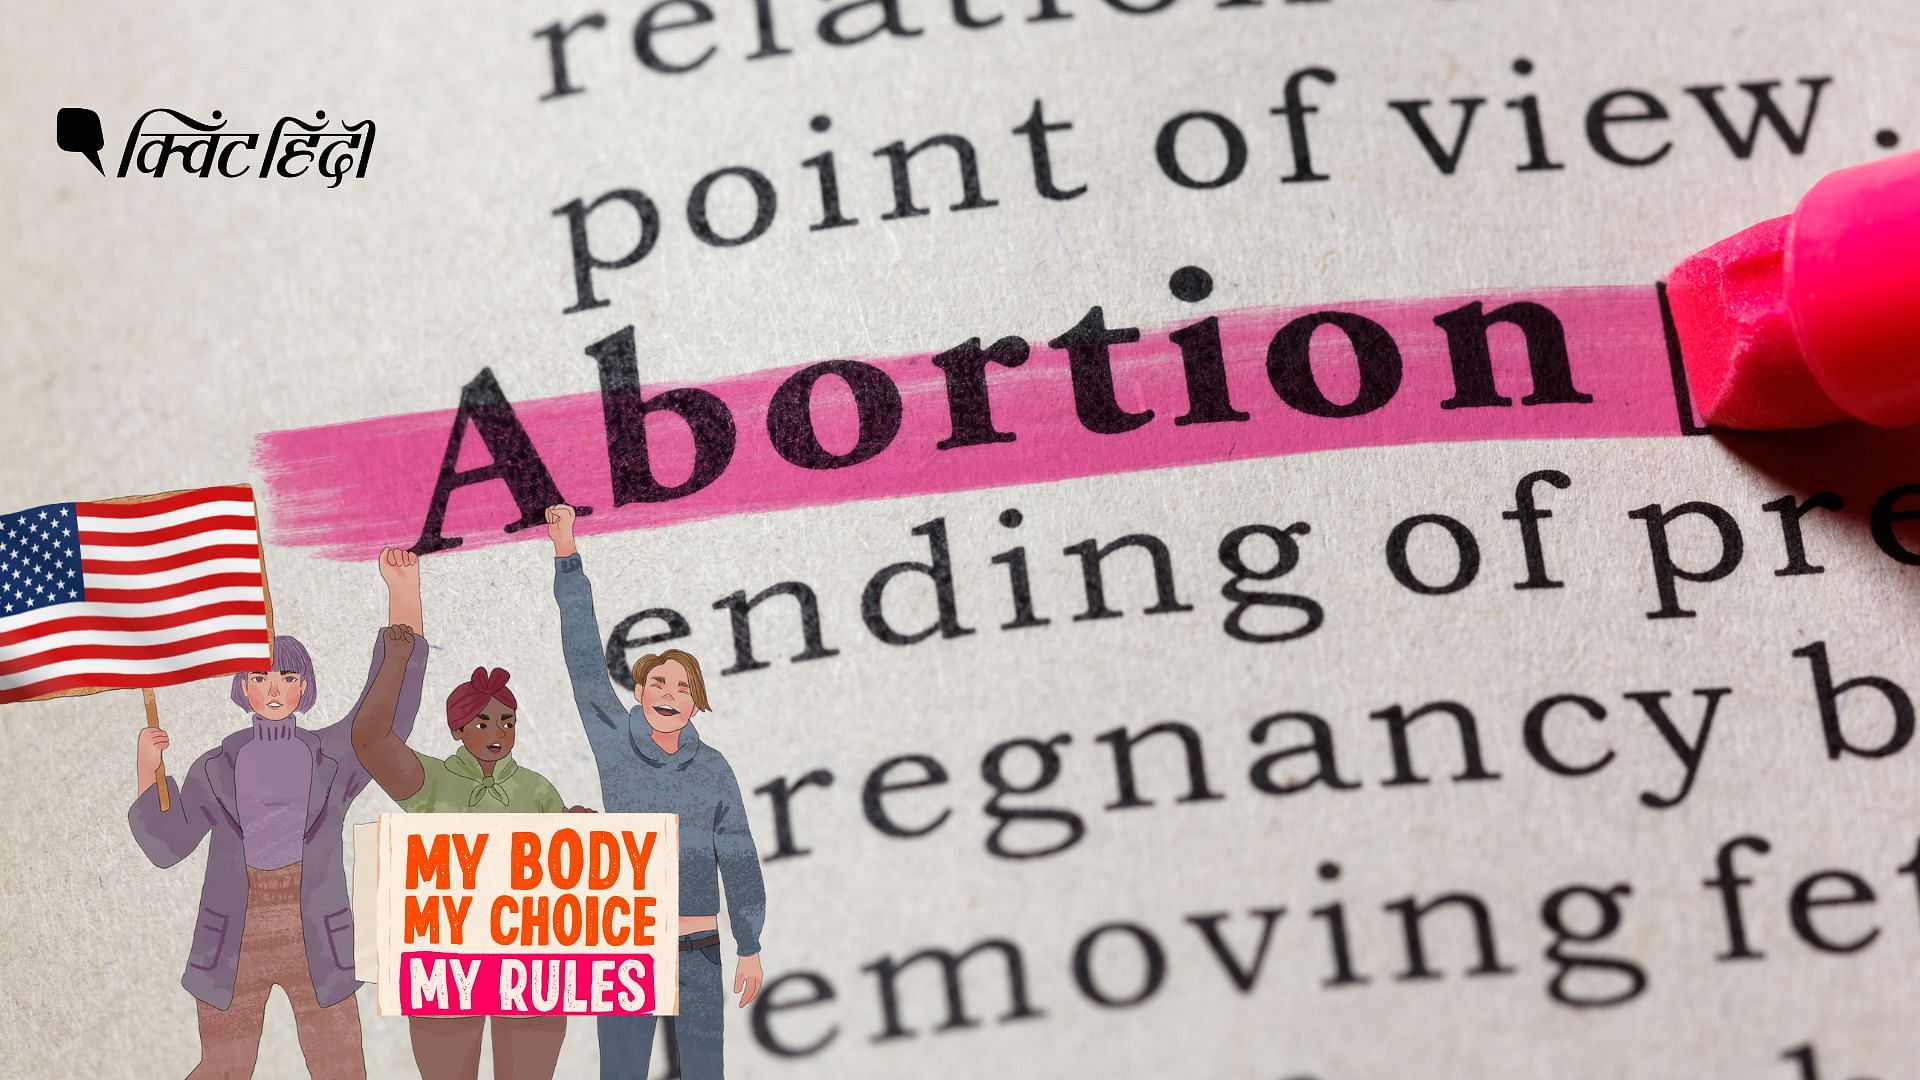 <div class="paragraphs"><p>US में गर्भपात संवैधानिक अधिकार नहीं,Roe v Wade फैसला पलटा-इससे क्या बदल जाएगा?</p></div>